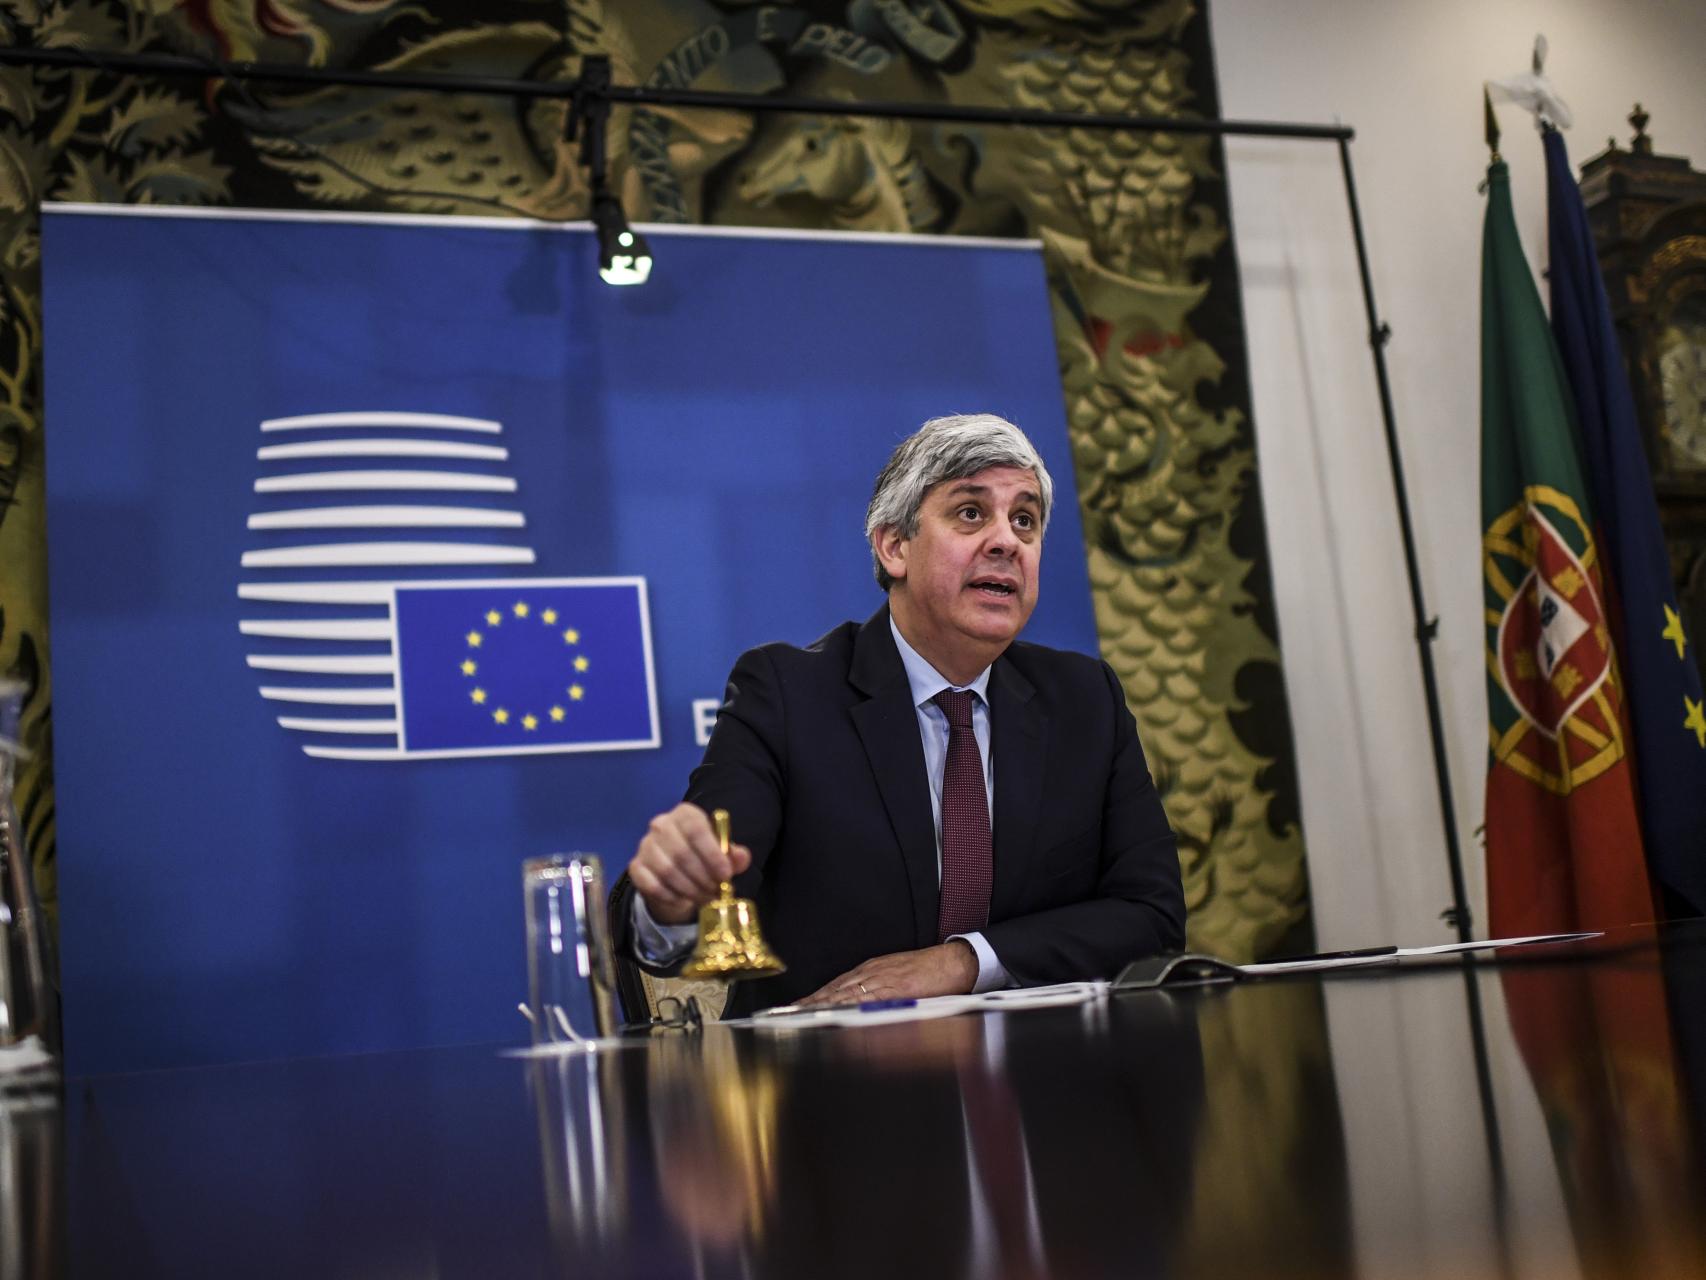 El presidente del Eurogrupo, Mário Centeno, hace sonar la campana durante una reunión virtual